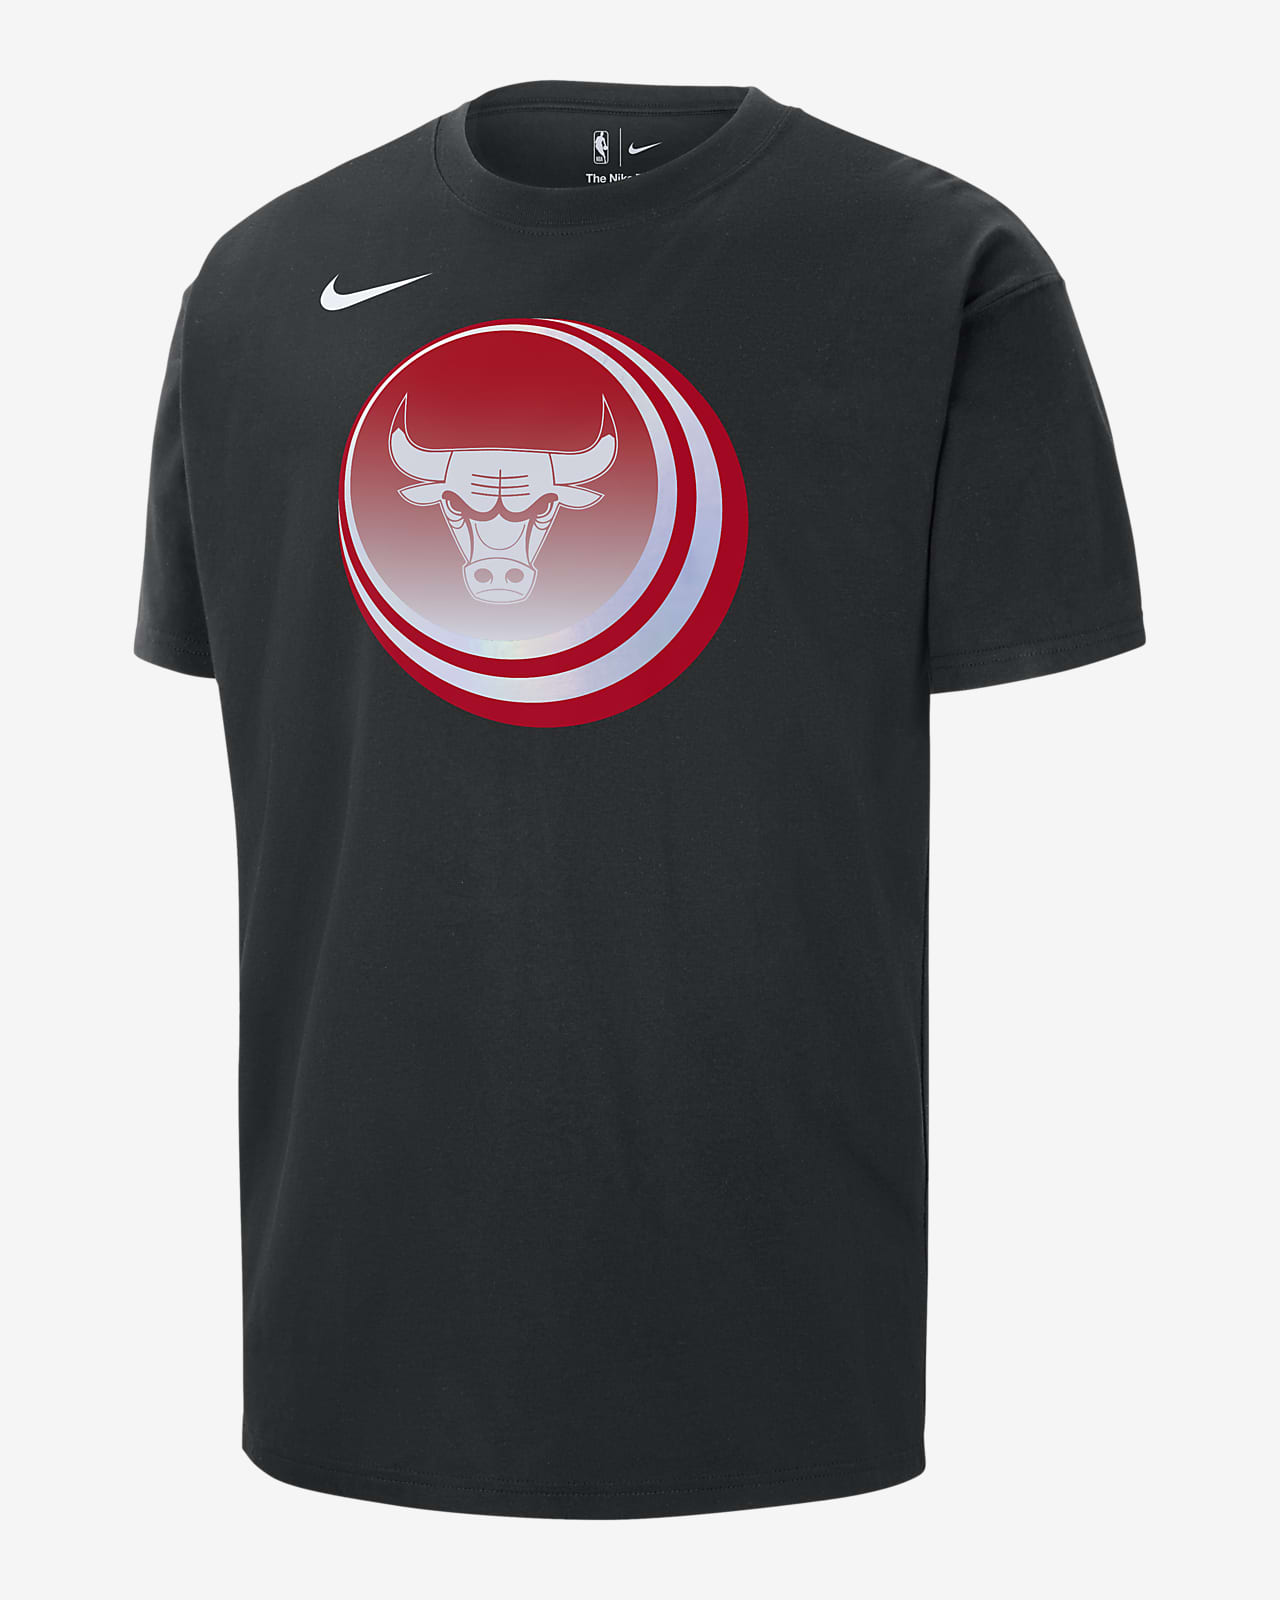 Playera Nike de la NBA para hombre Chicago Bulls Essential